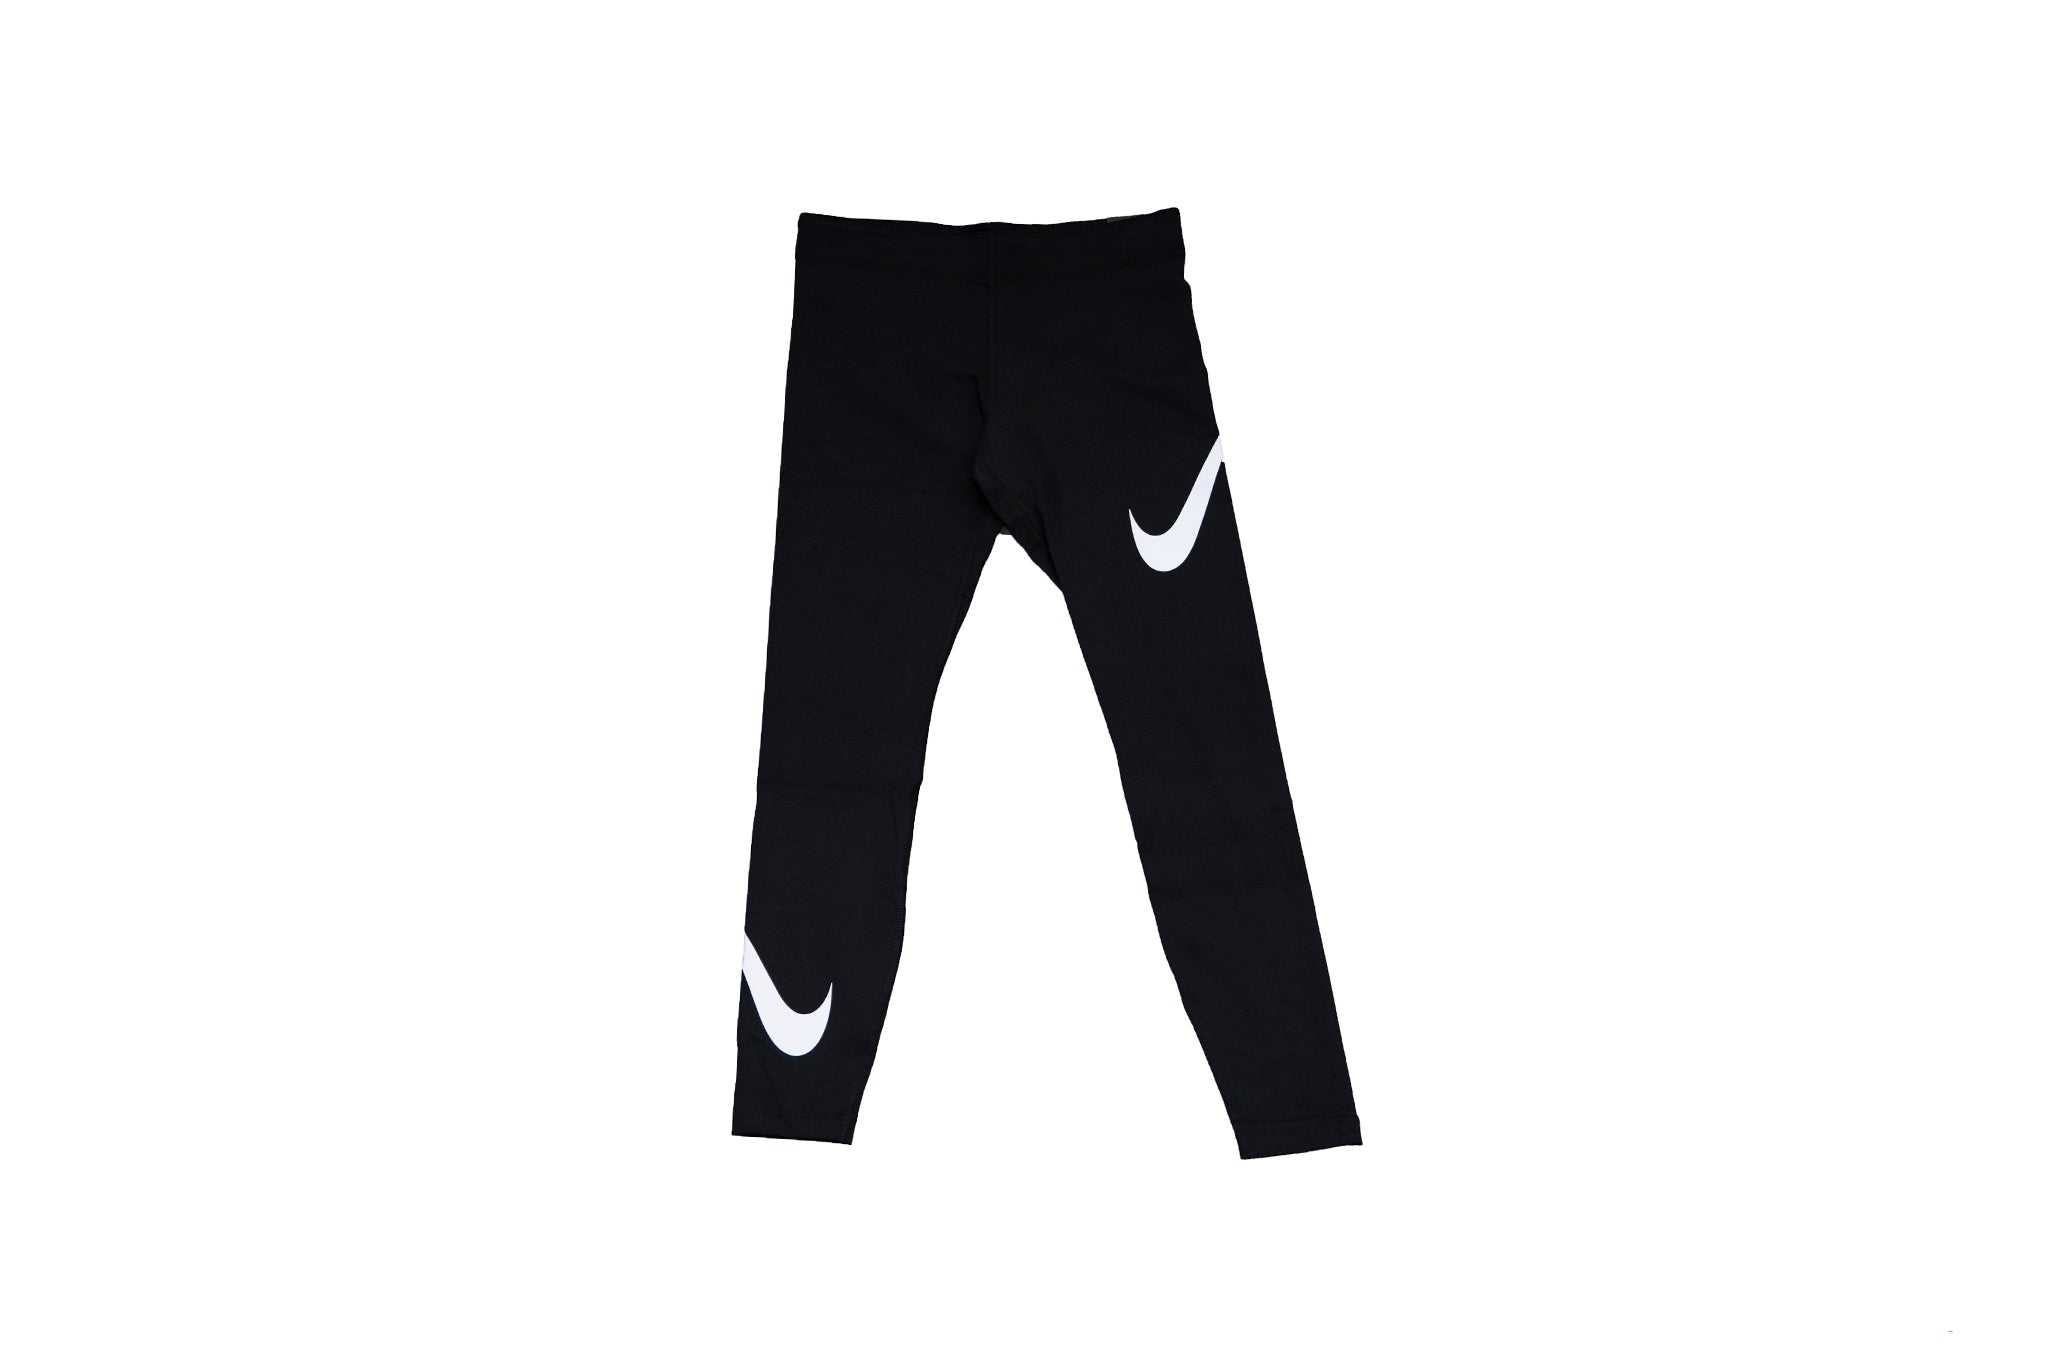 WMNS Nike Sportswear LEG-A-SEE Swoosh Leggings - SoleFly